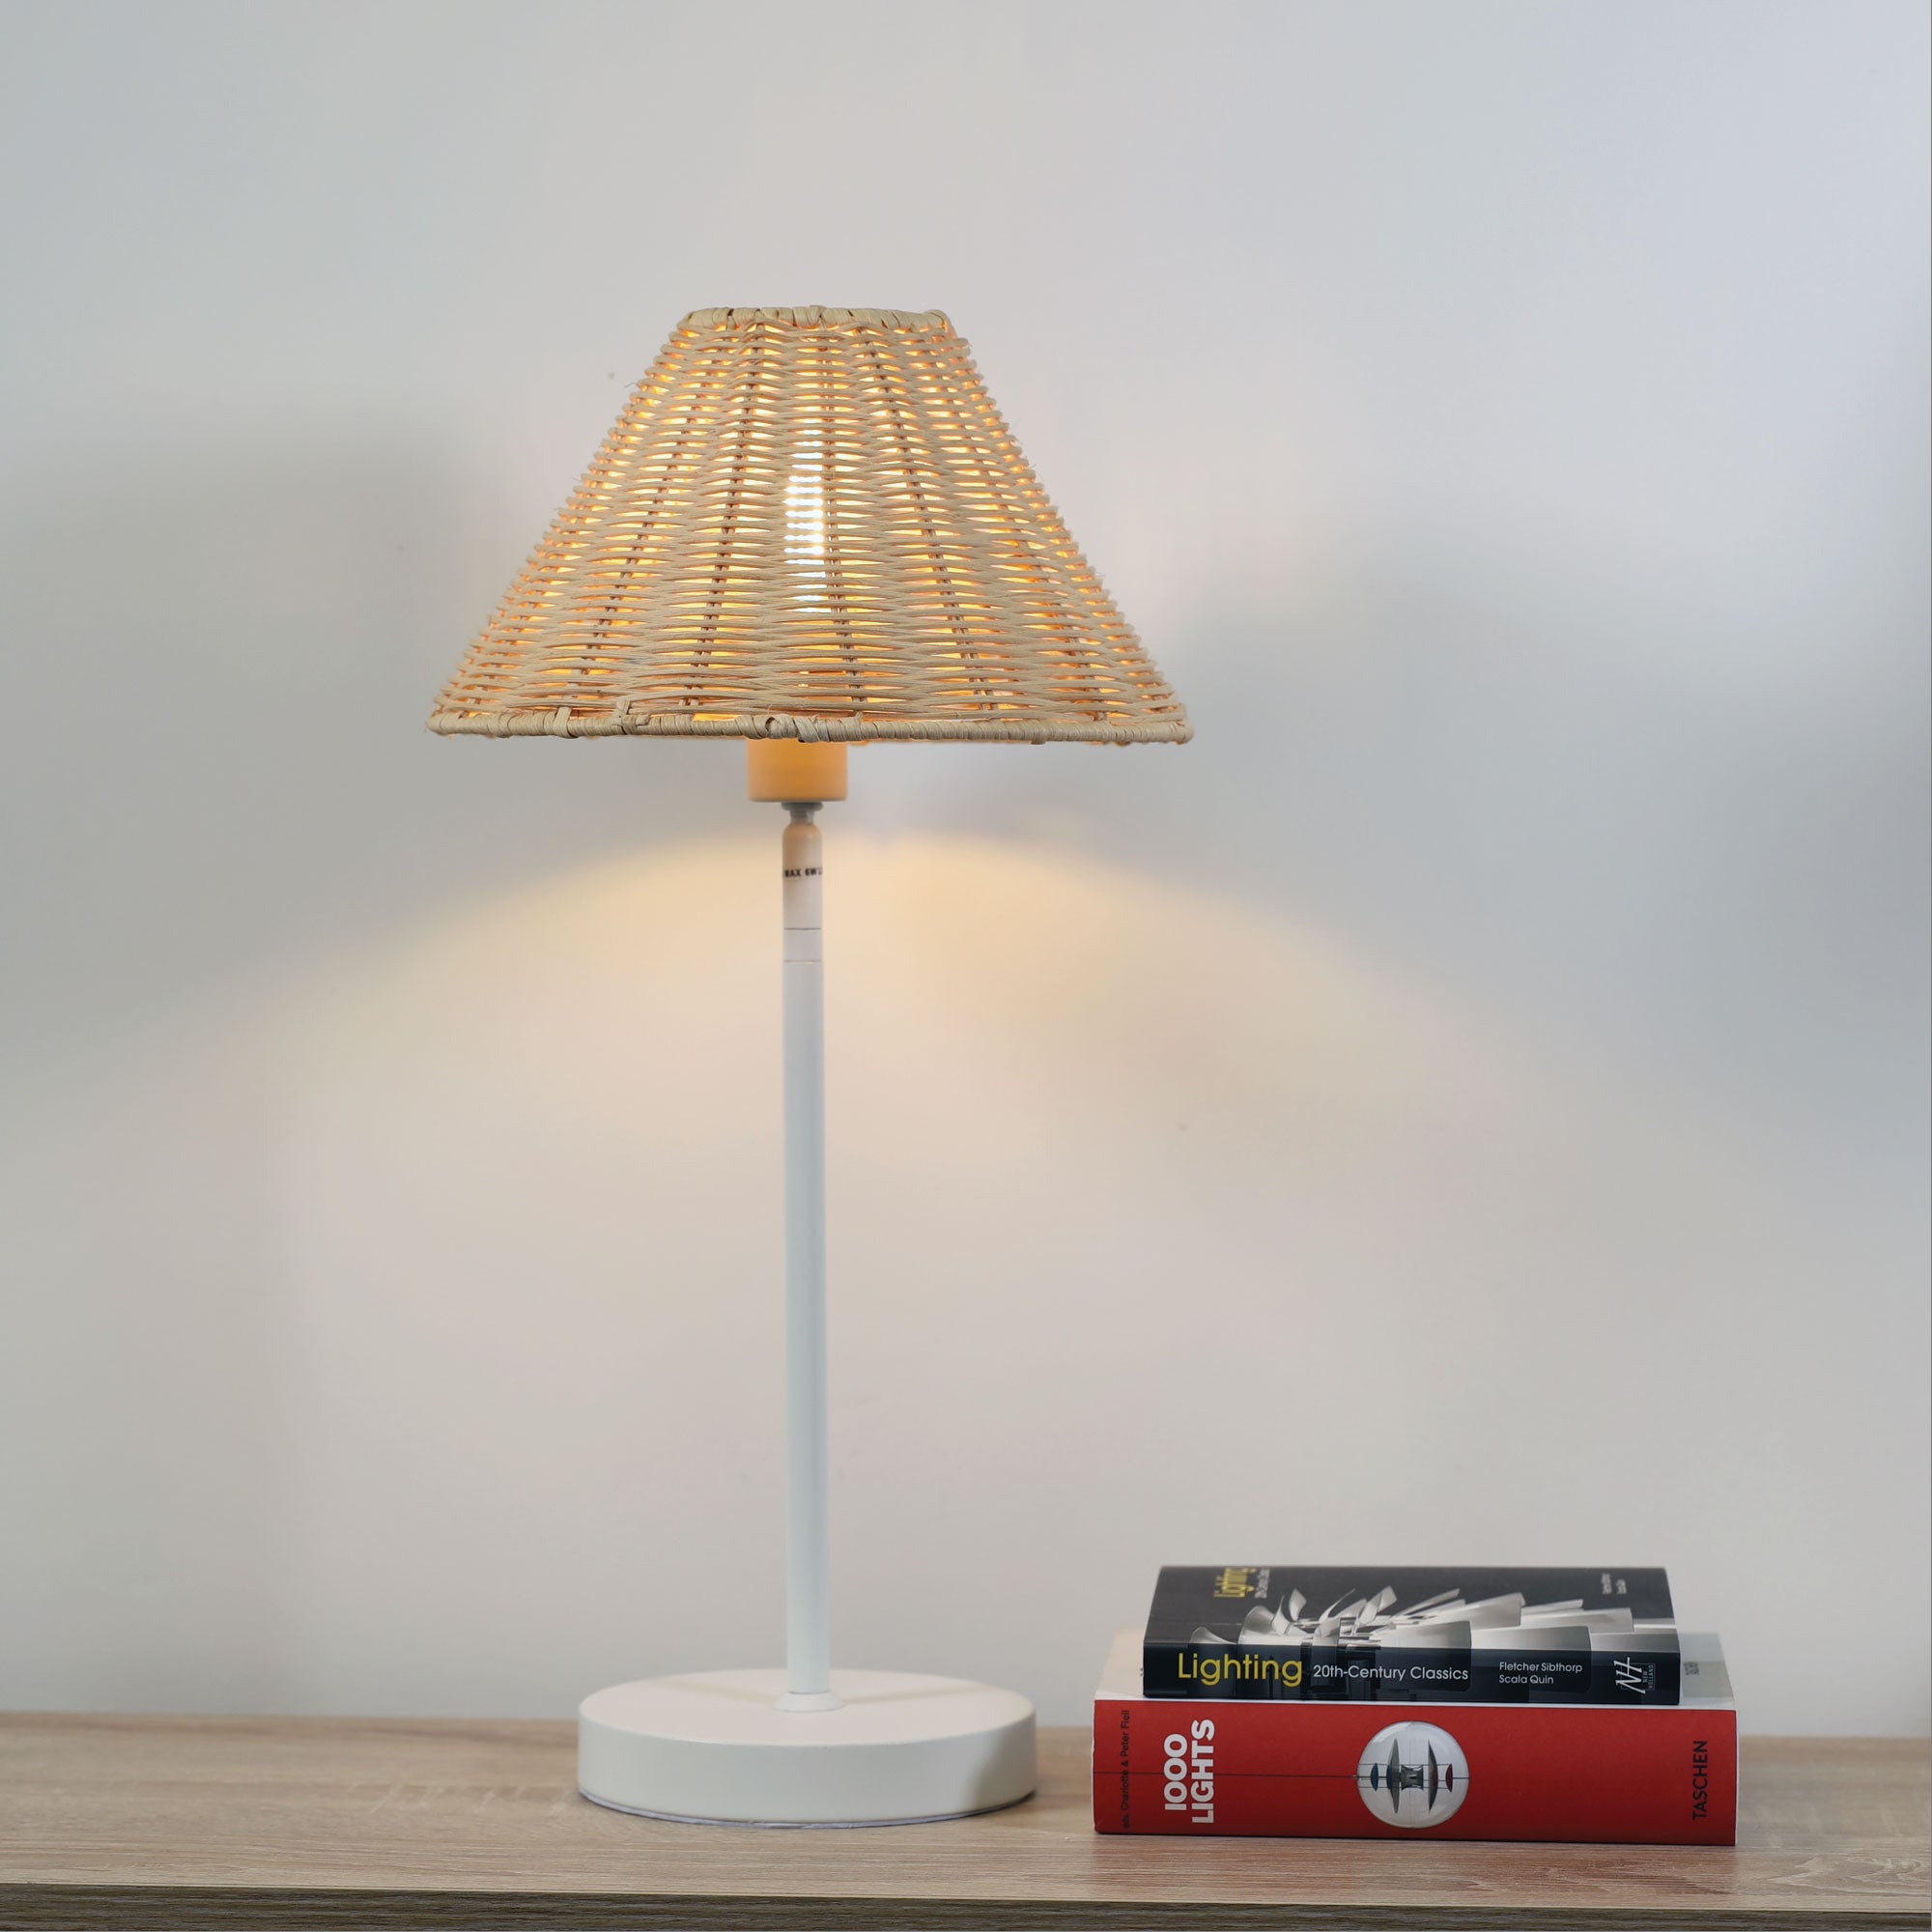 Bella Rattan Table Lamp